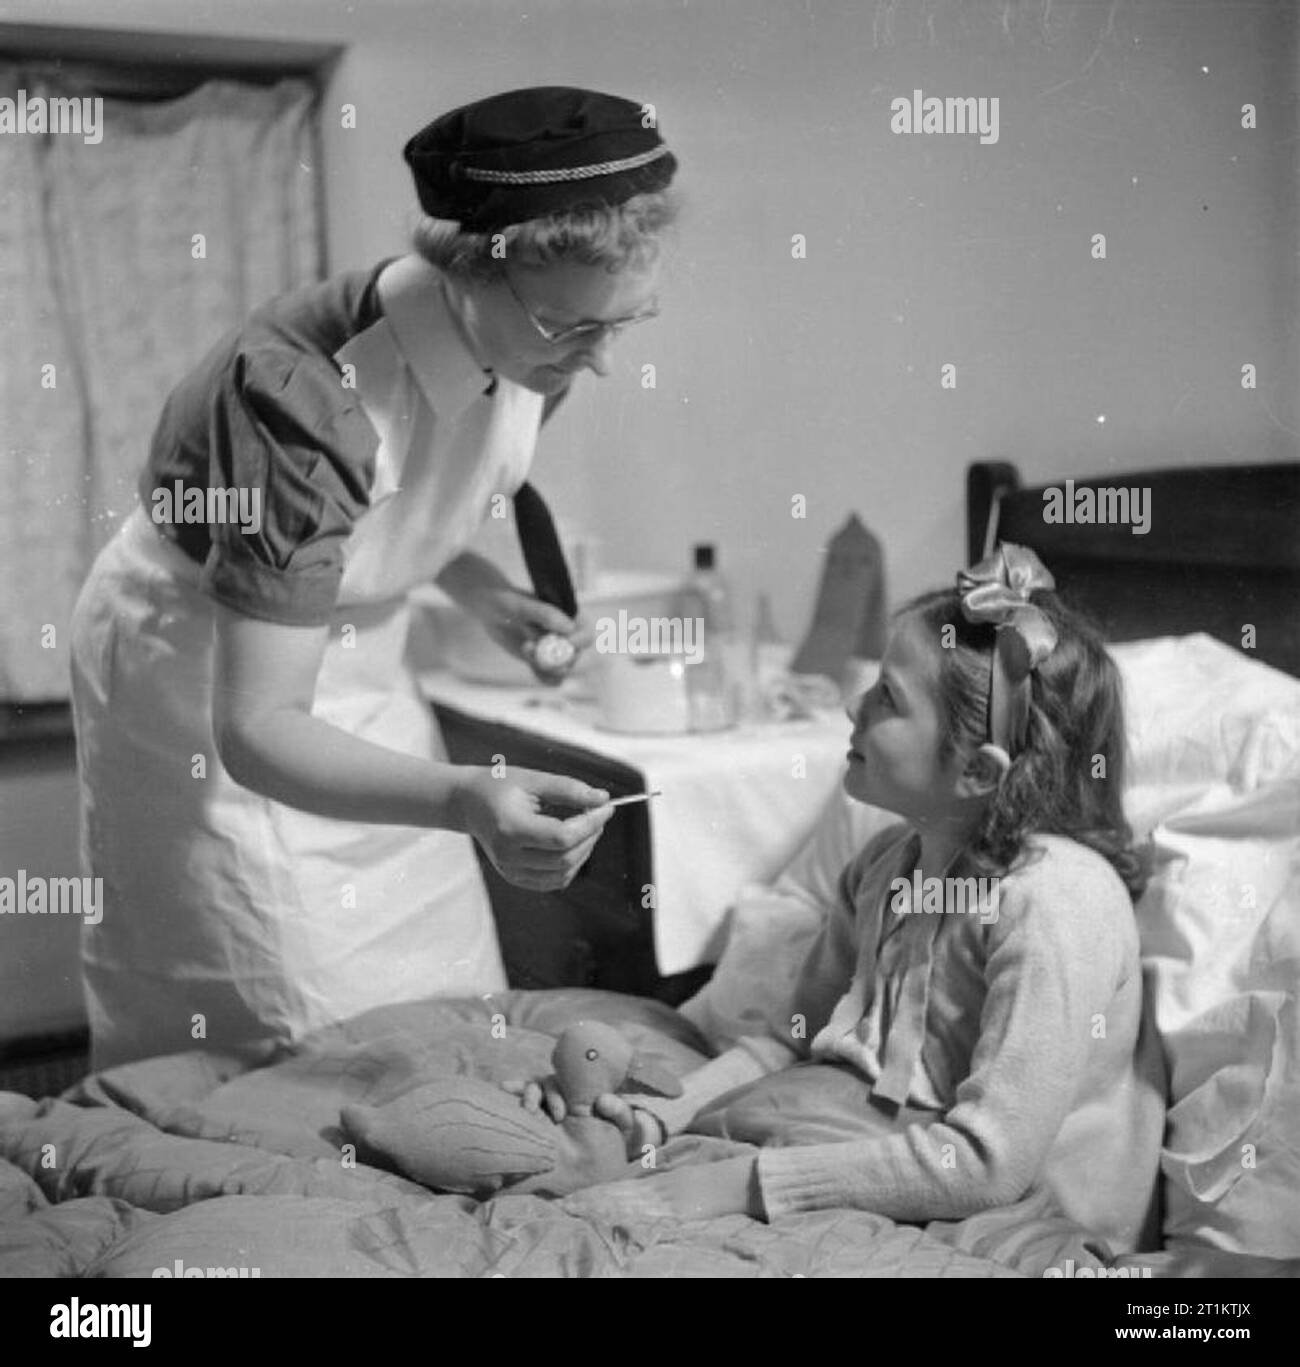 Ausbildung der Königin Krankenschwestern - Bezirk Krankenschwester Ausbildung im Queen's Institut für Bezirk Krankenpflege, Guildford, Surrey, England, Großbritannien, 1944 ein Traineeprogramm Bezirk Krankenschwester besucht die Heimat von einem jungen Mädchen, das sich nach einer Lungenentzündung. Das Mädchen ist im Bett sitzend und hält ein Tuch Spielzeug in der Form einer Ente. Stockfoto